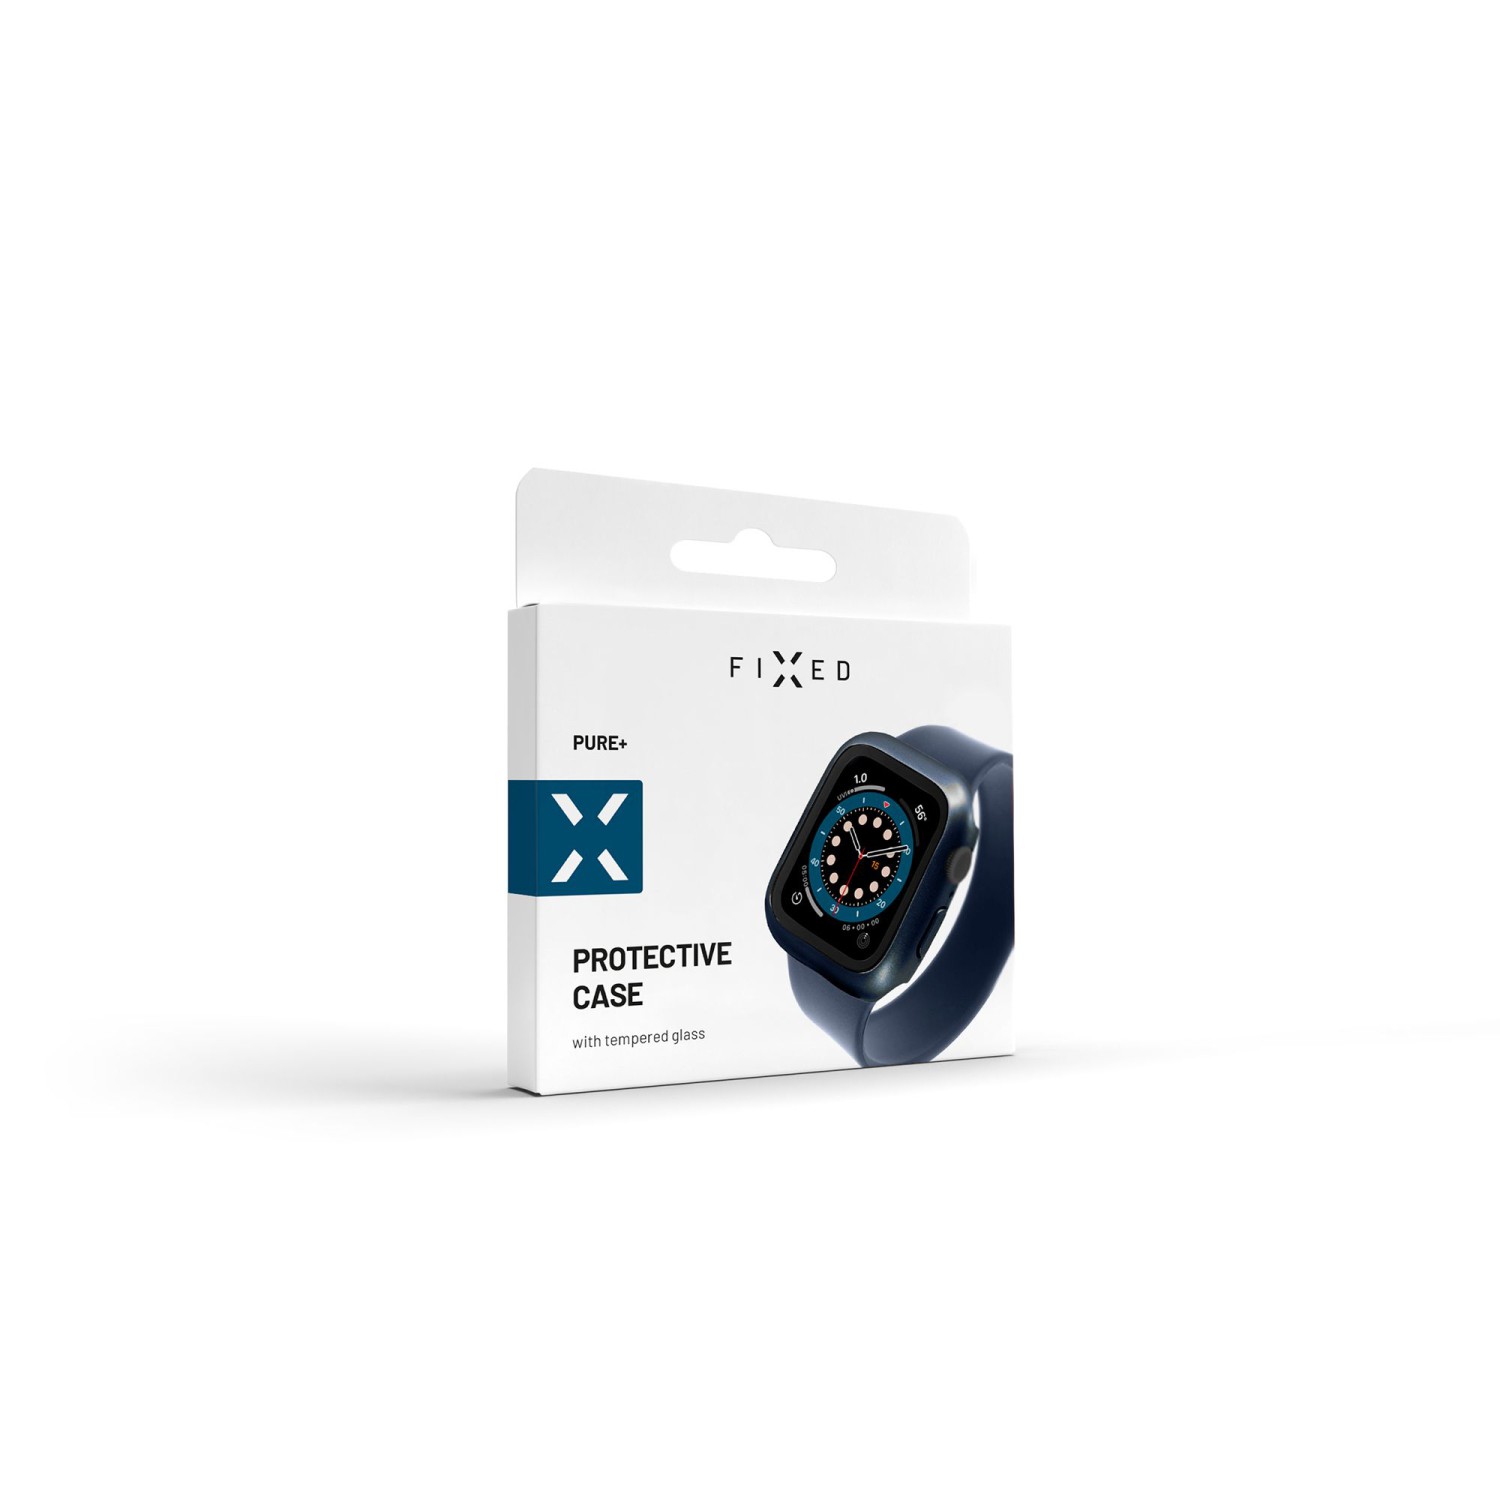 Ochranné pouzdro FIXED Pure+ s tvrzeným sklem pro Apple Watch 40mm, modrá